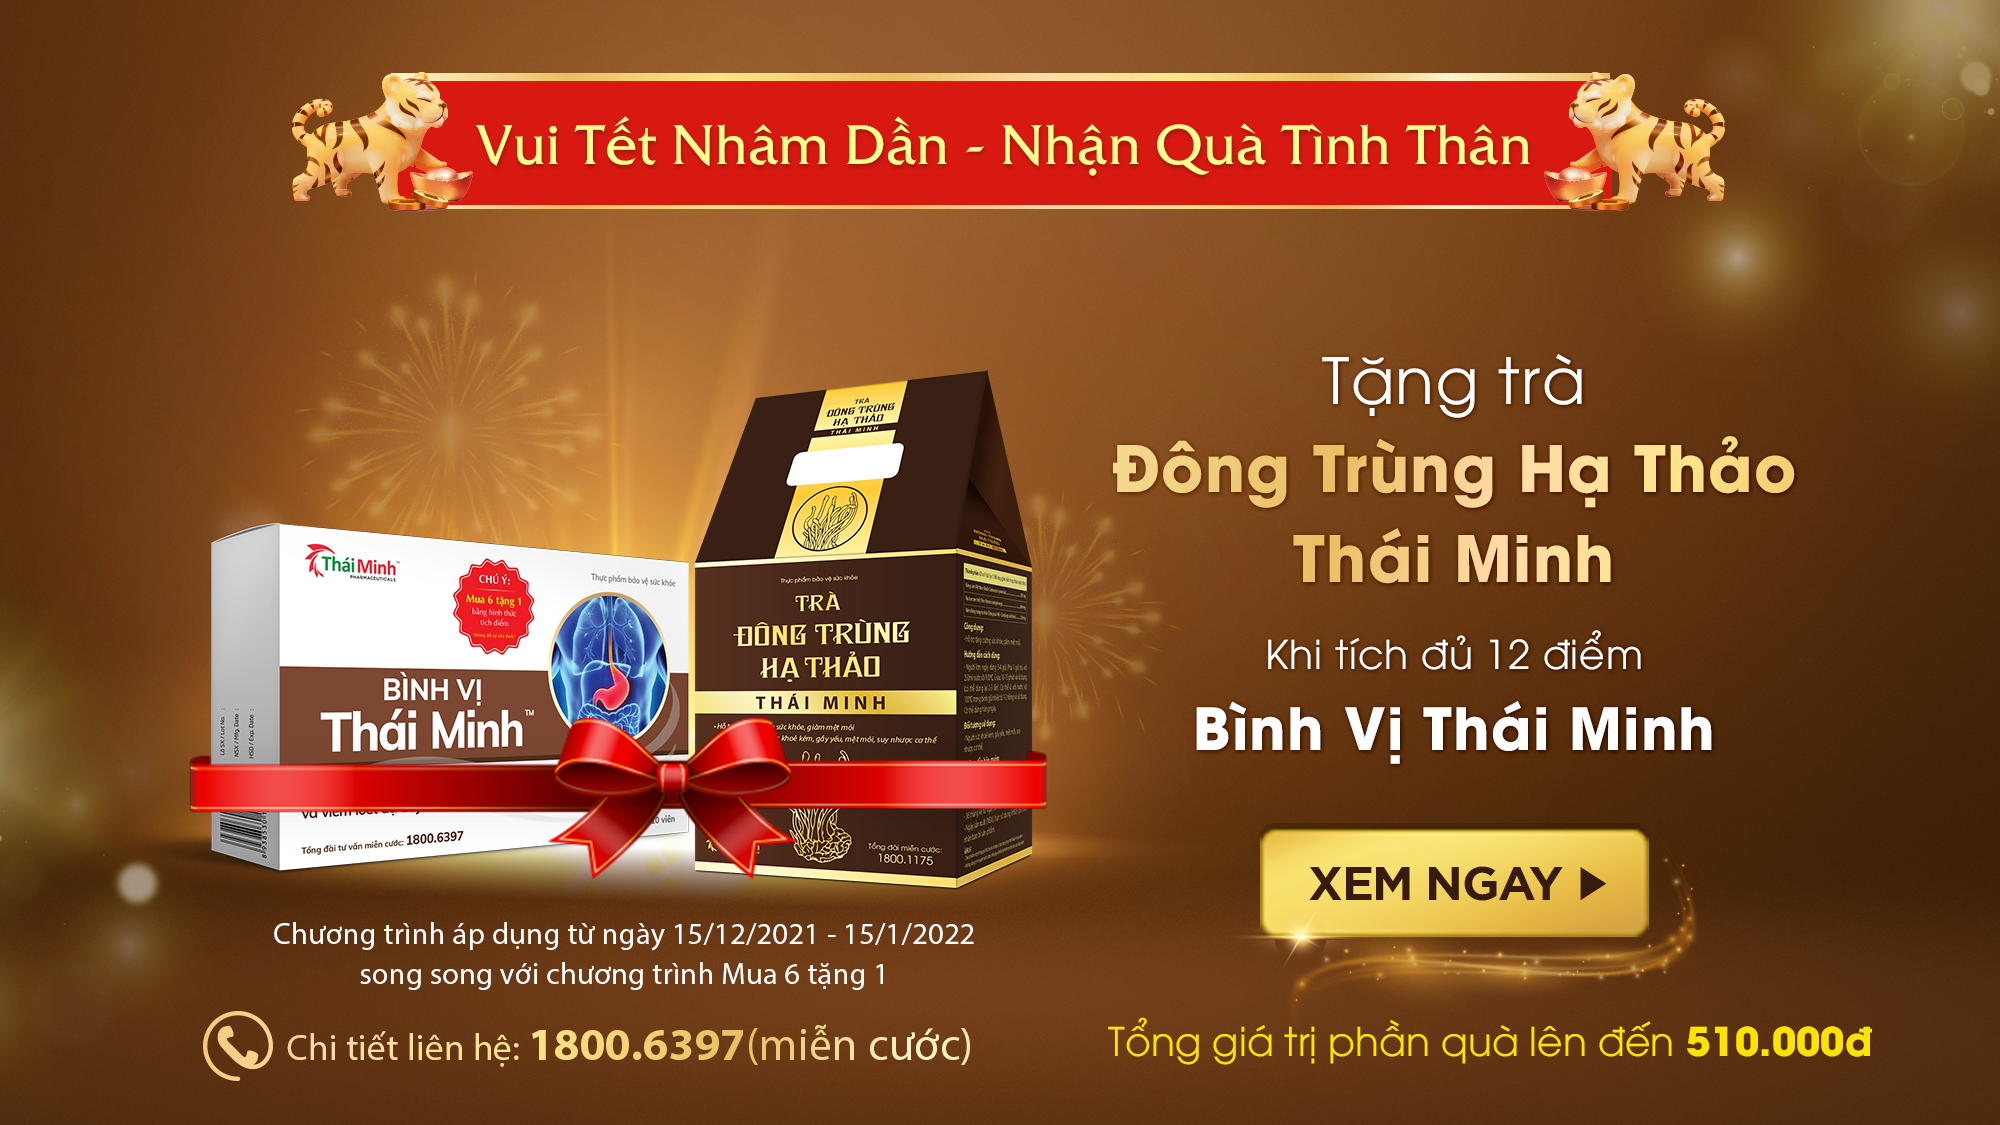 Ưu đãi lớn: Tặng ngay trà Đông Trùng Hạ Thảo Thái Minh khi mua Bình Vị Thái Minh